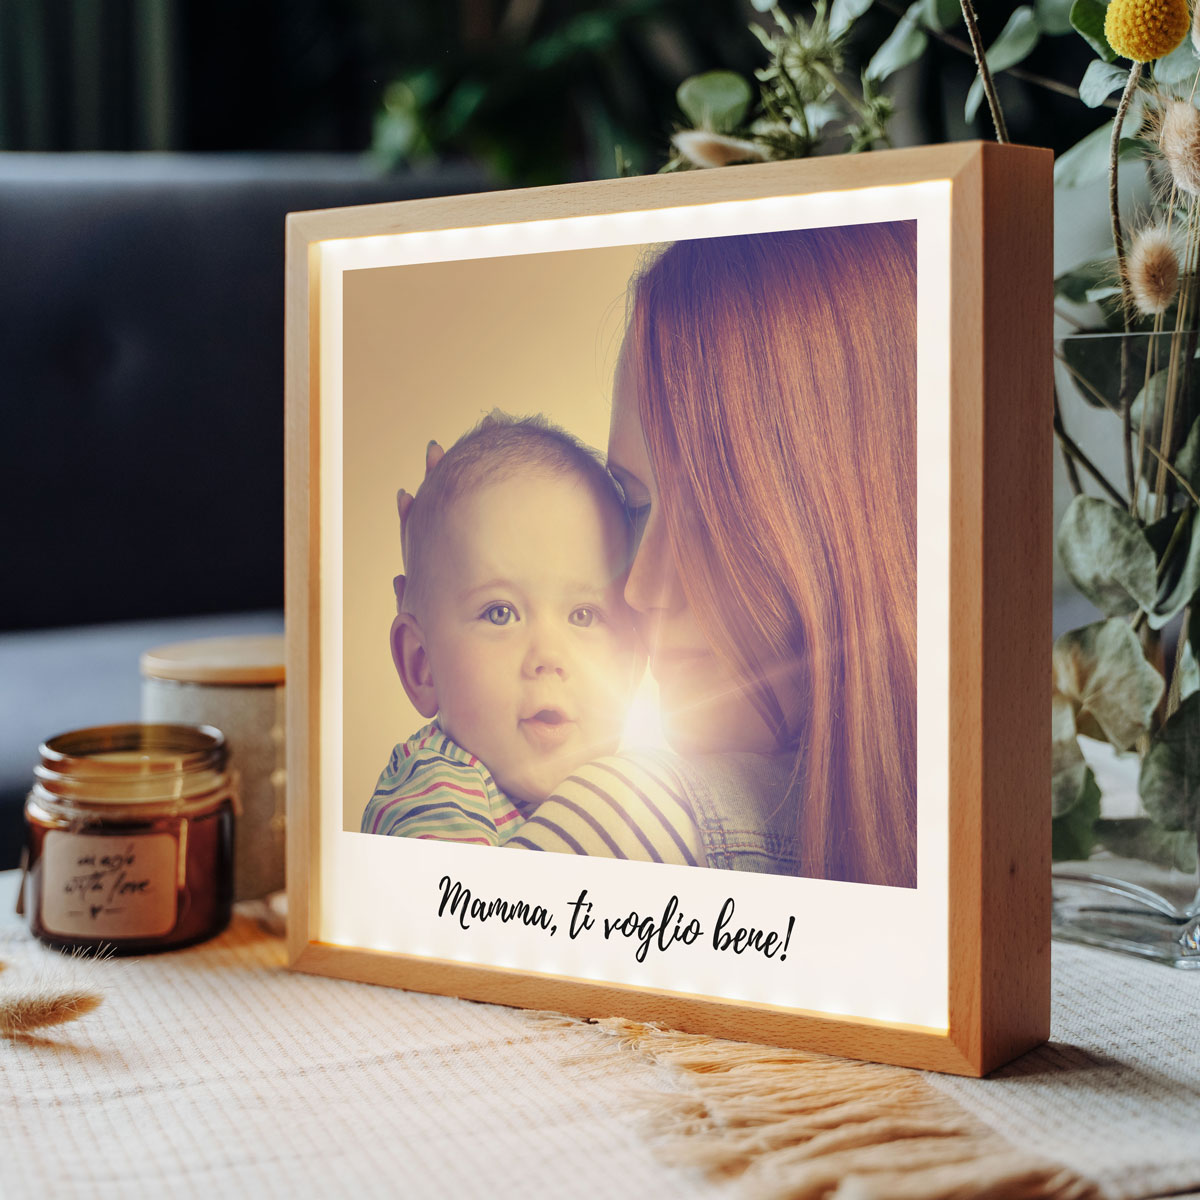 regali per la festa della mamma light box personalizzata in stile polaroid